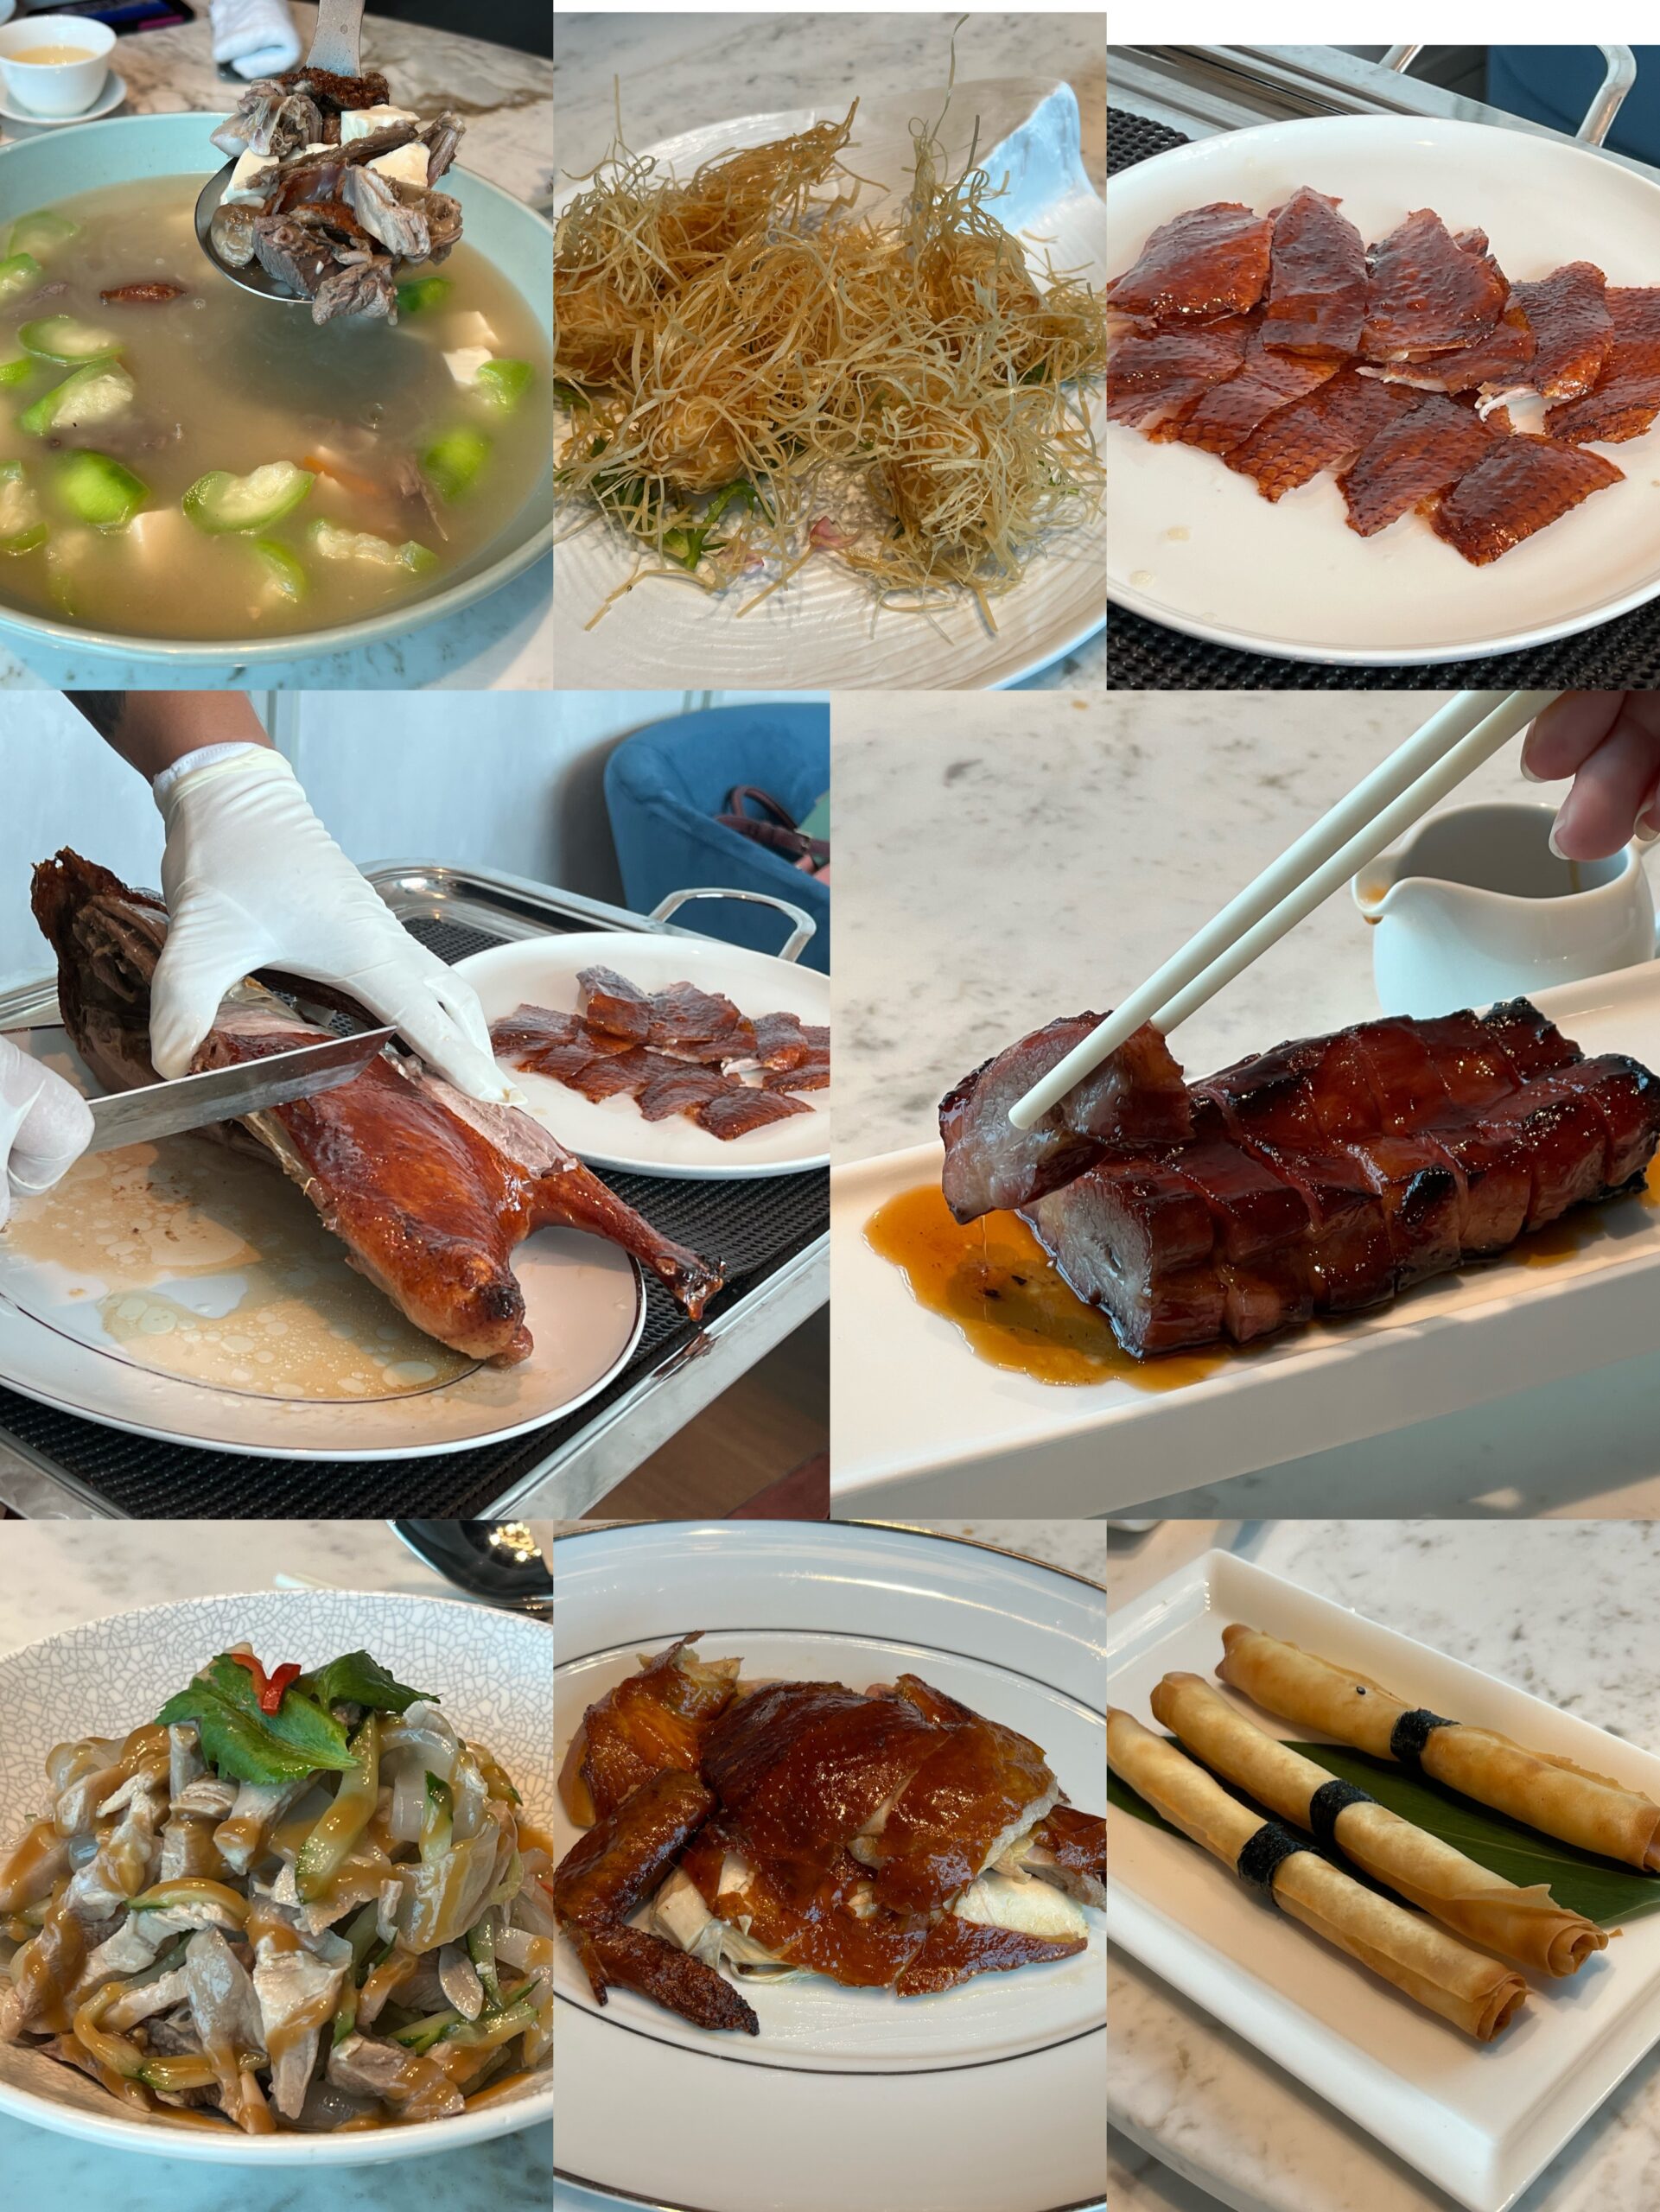 Taipei101,包廂,台北烤鴨燒鵝餐廳,家庭聚餐,景觀餐廳,桌邊服務,港式點心,煙火,燒鵝,粵菜,約會,跨年